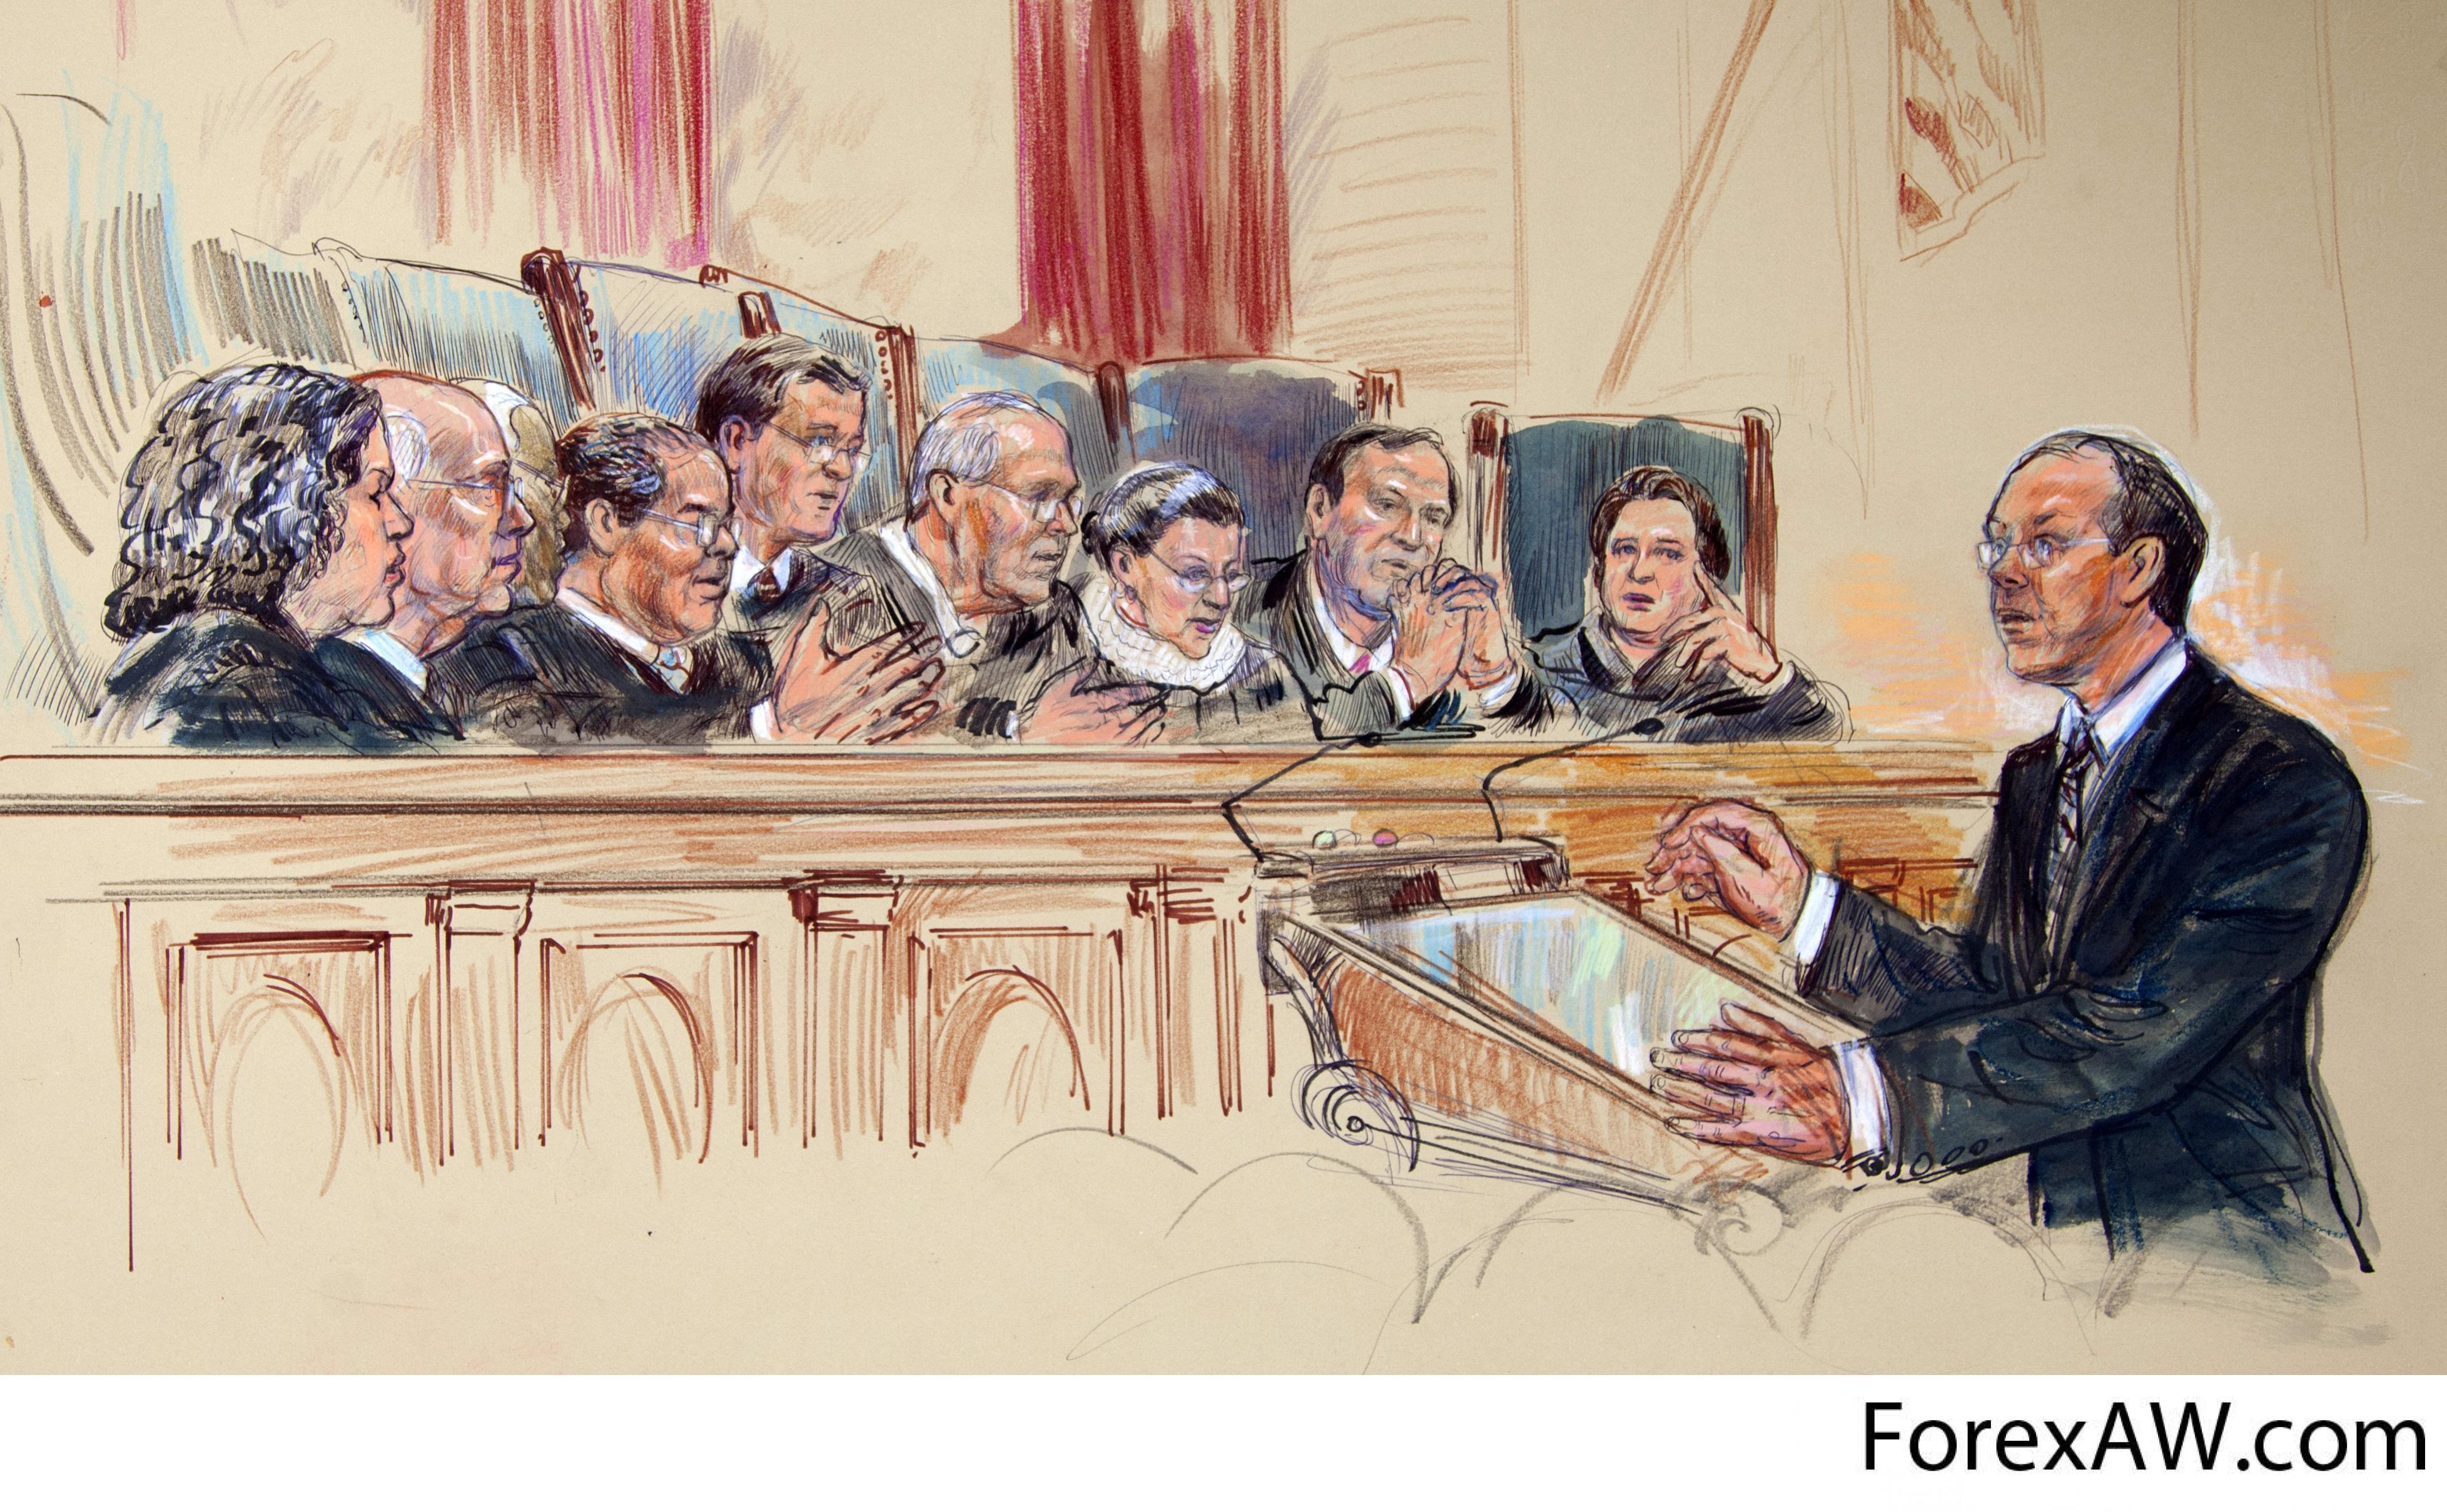 Речи судебных ораторов. Судебный процесс. Судебное заседание картина. Судебное заседание иллюстрации. Судебный оратор.